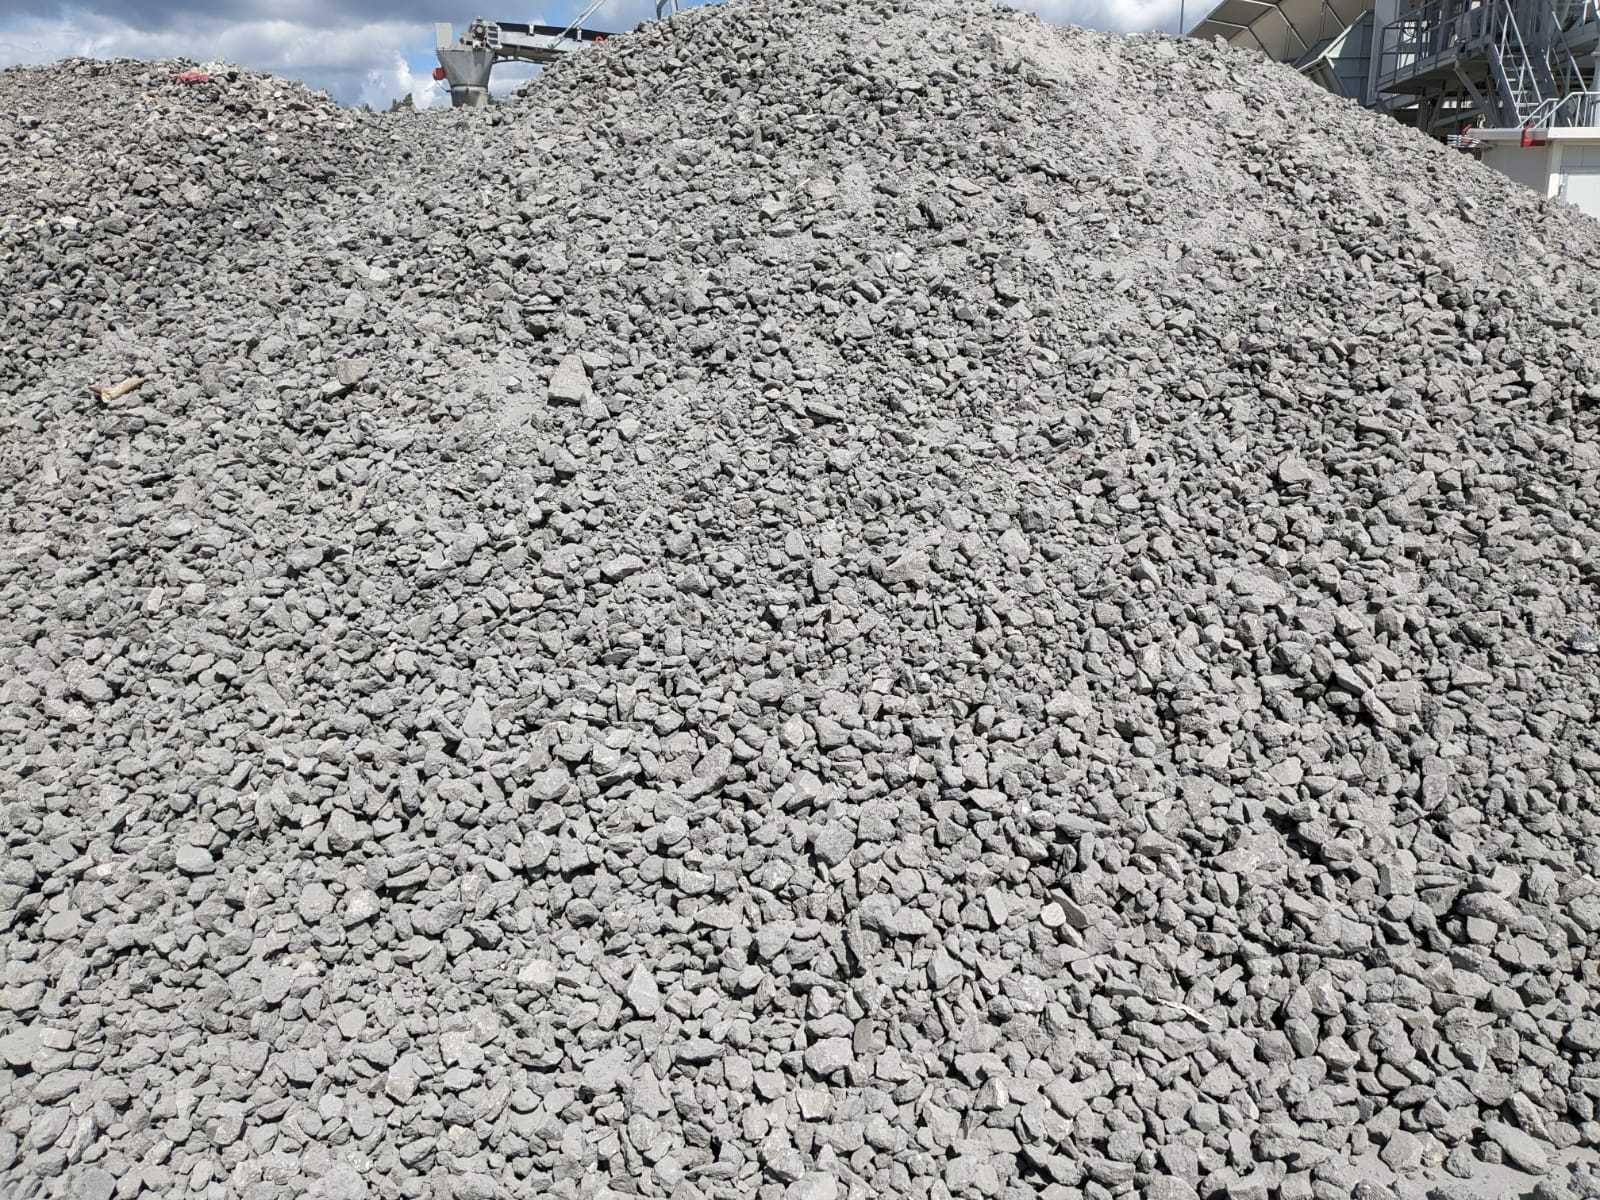 100% Czysty gruz betonowy frakcja 0/63 mm